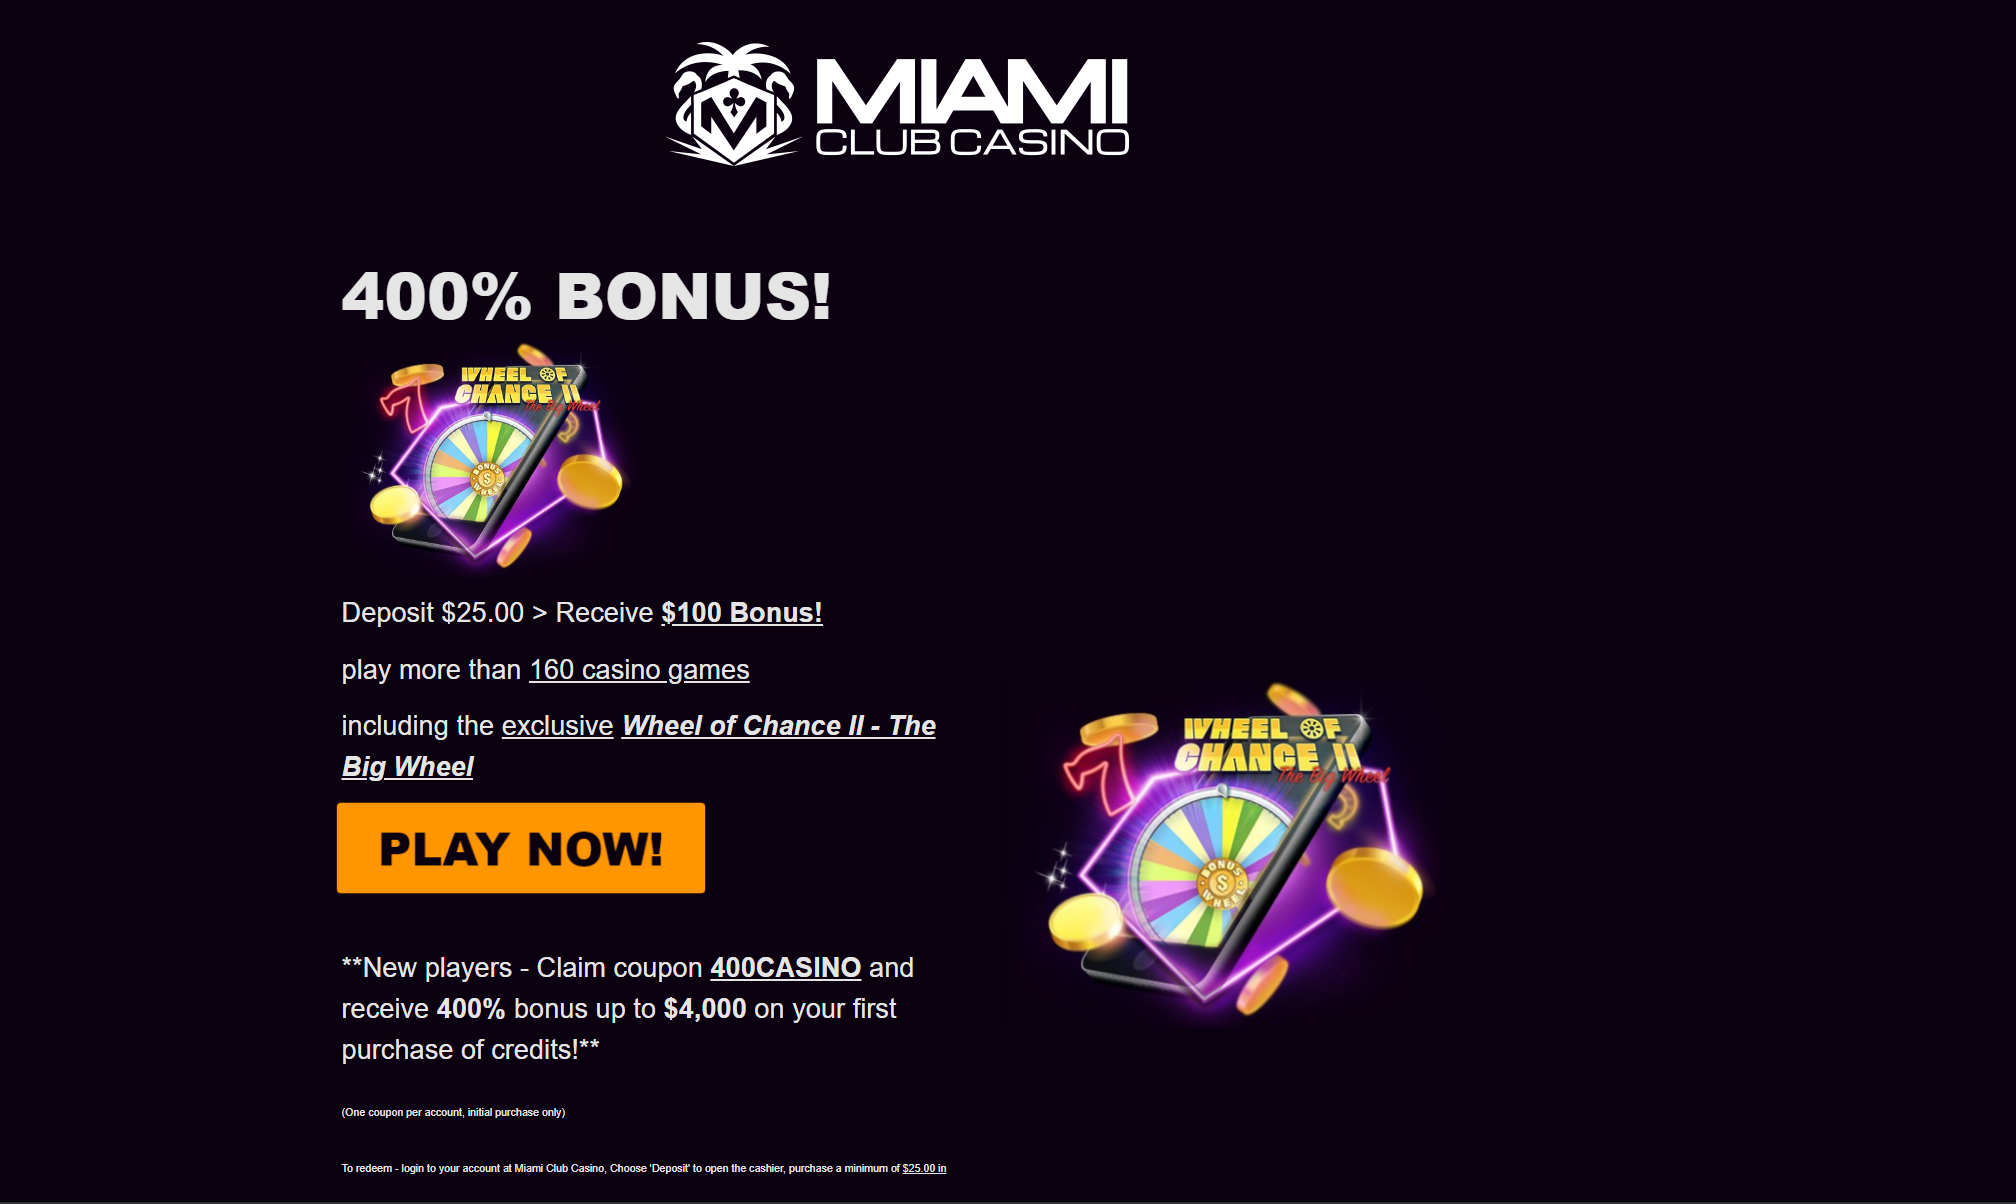 Miami Club Casino 400% Welcome Offer 